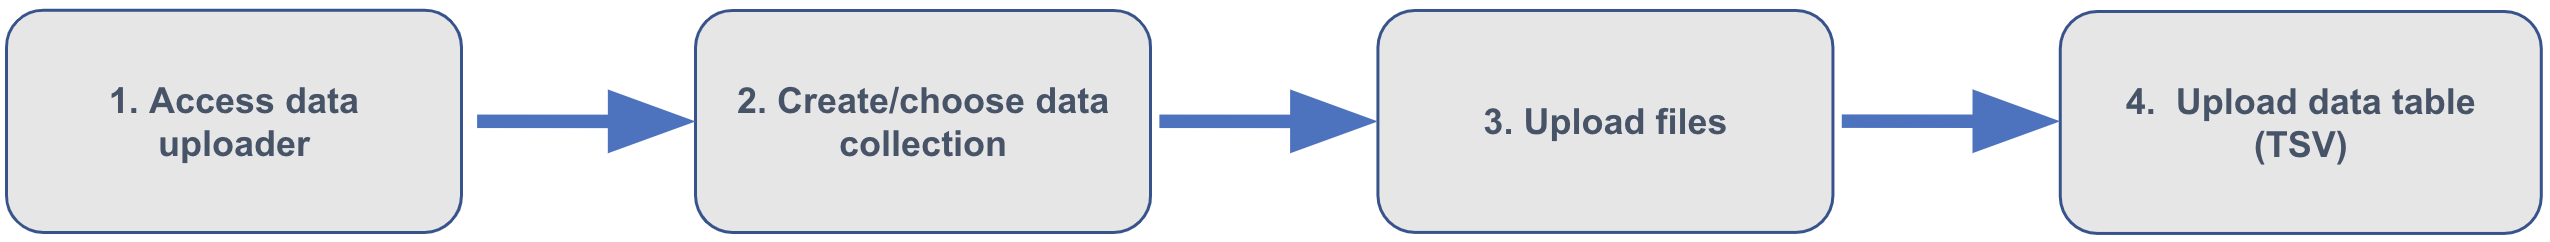 Data-uploader_Steps-to-use_diagram.png